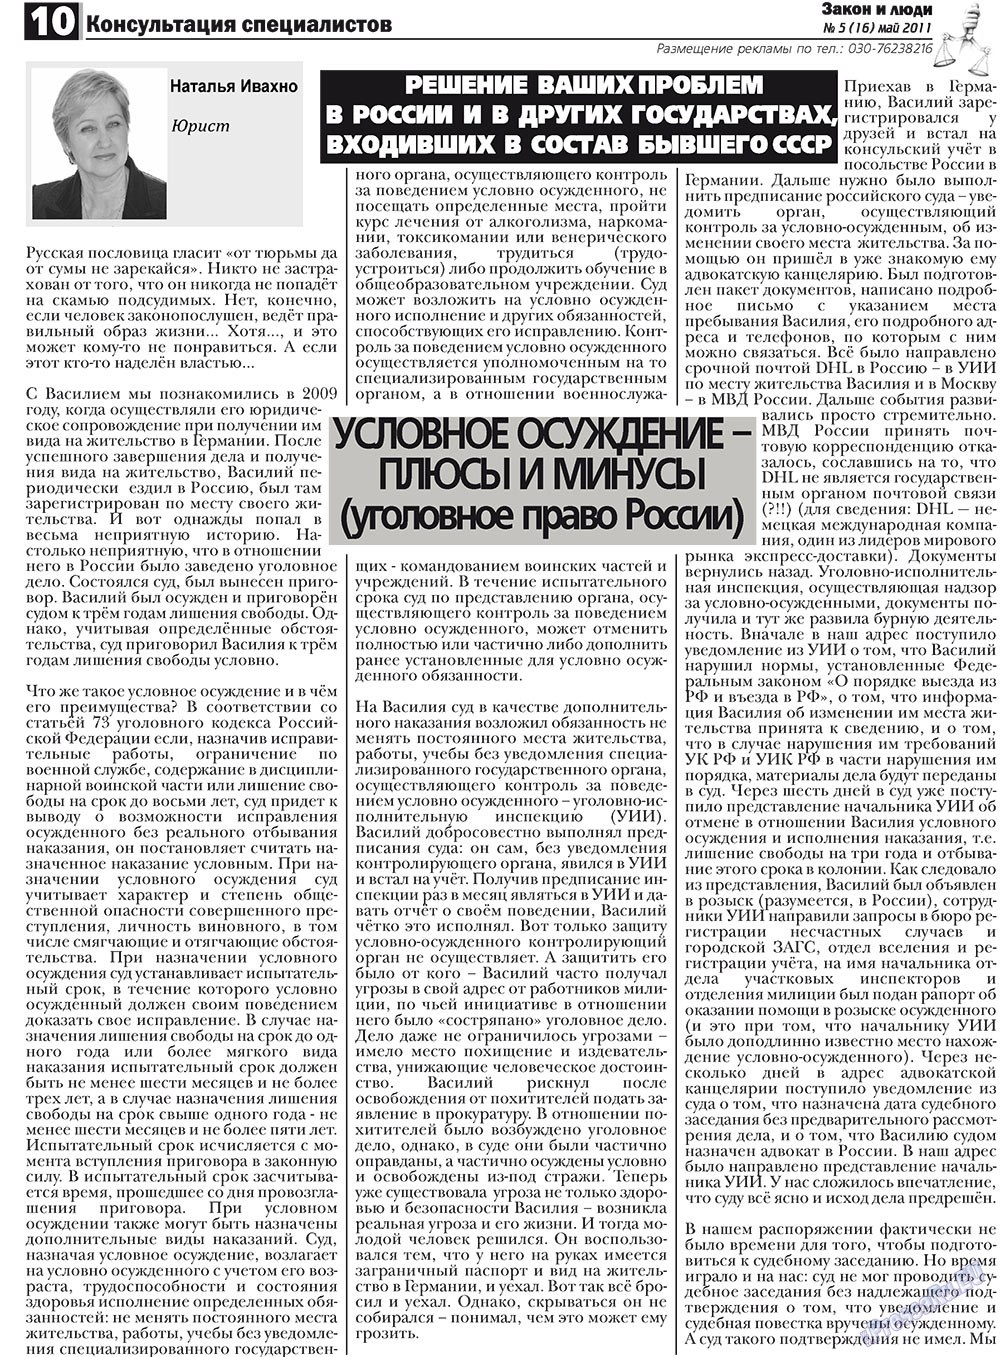 Закон и люди, газета. 2011 №5 стр.10